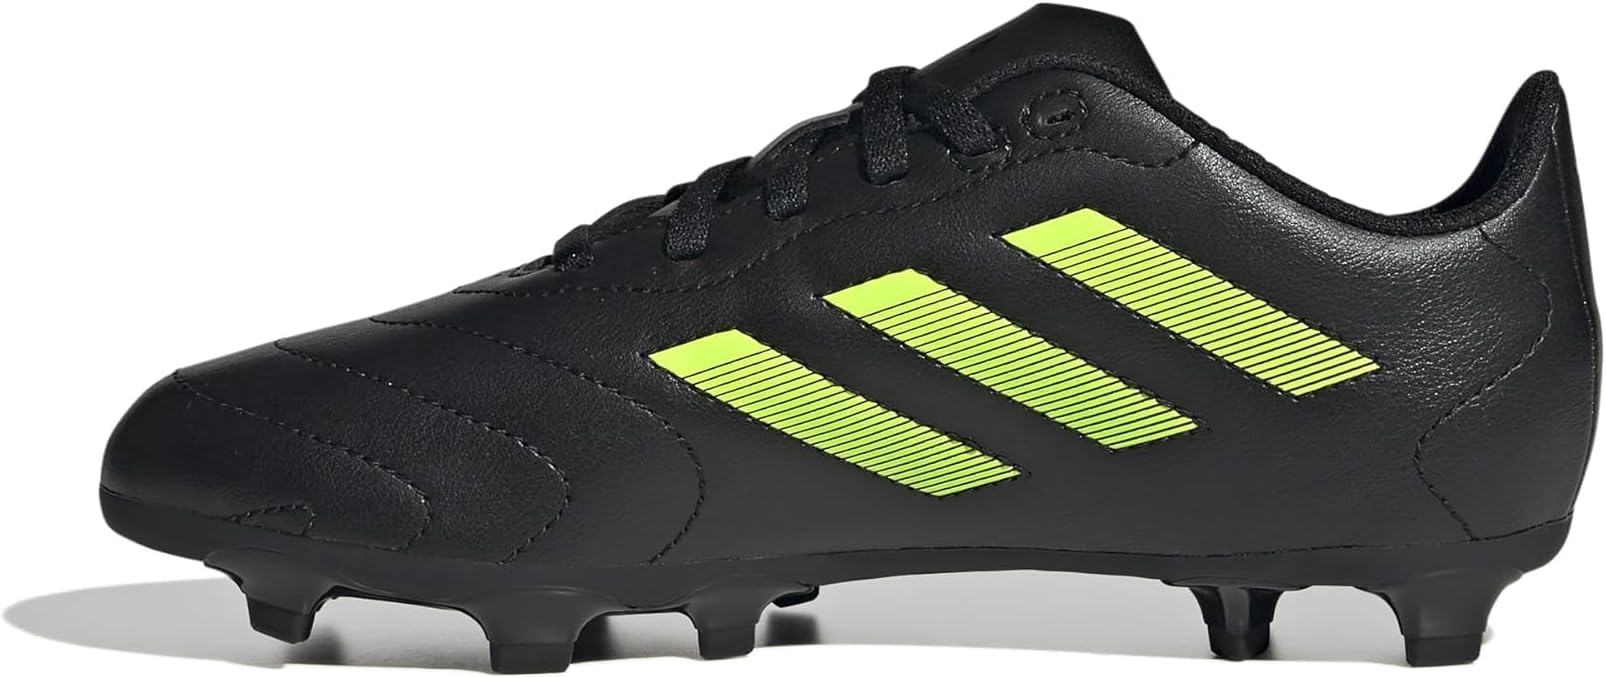 Adidas Unisex-Child Goletto VIII Firm Ground Soccer Shoe